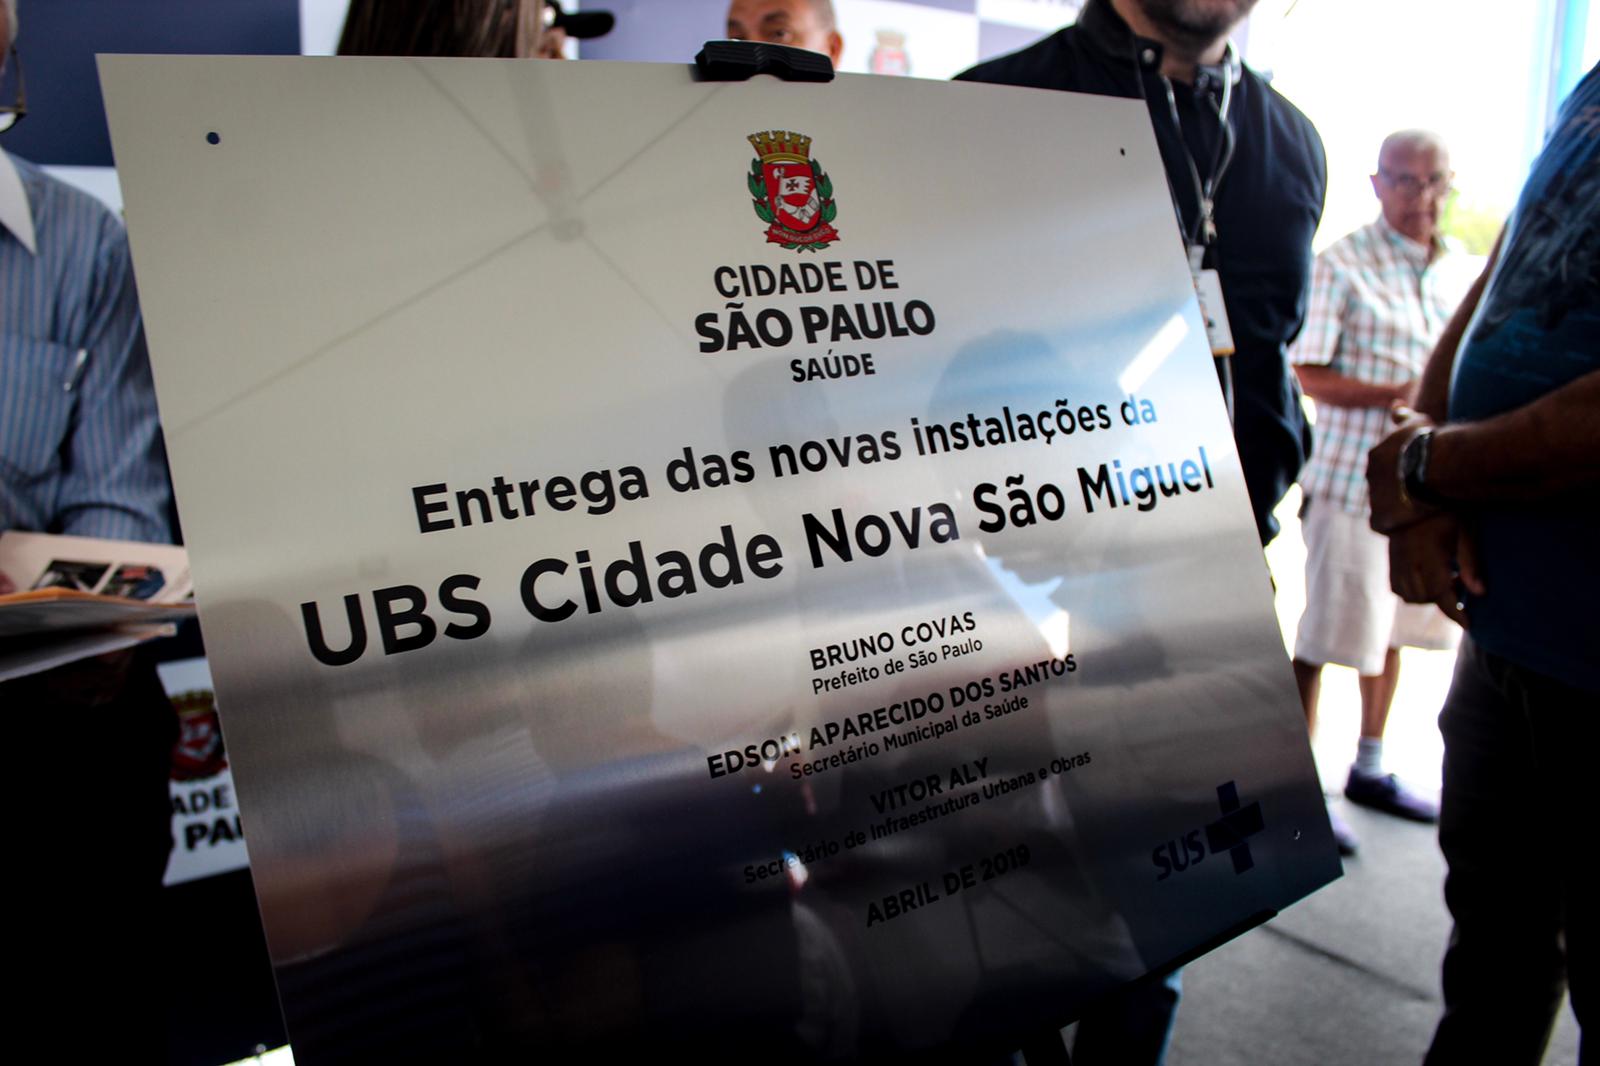 Imagem mostra a placa de inauguração da UBS Cidade Nova São Miguel.